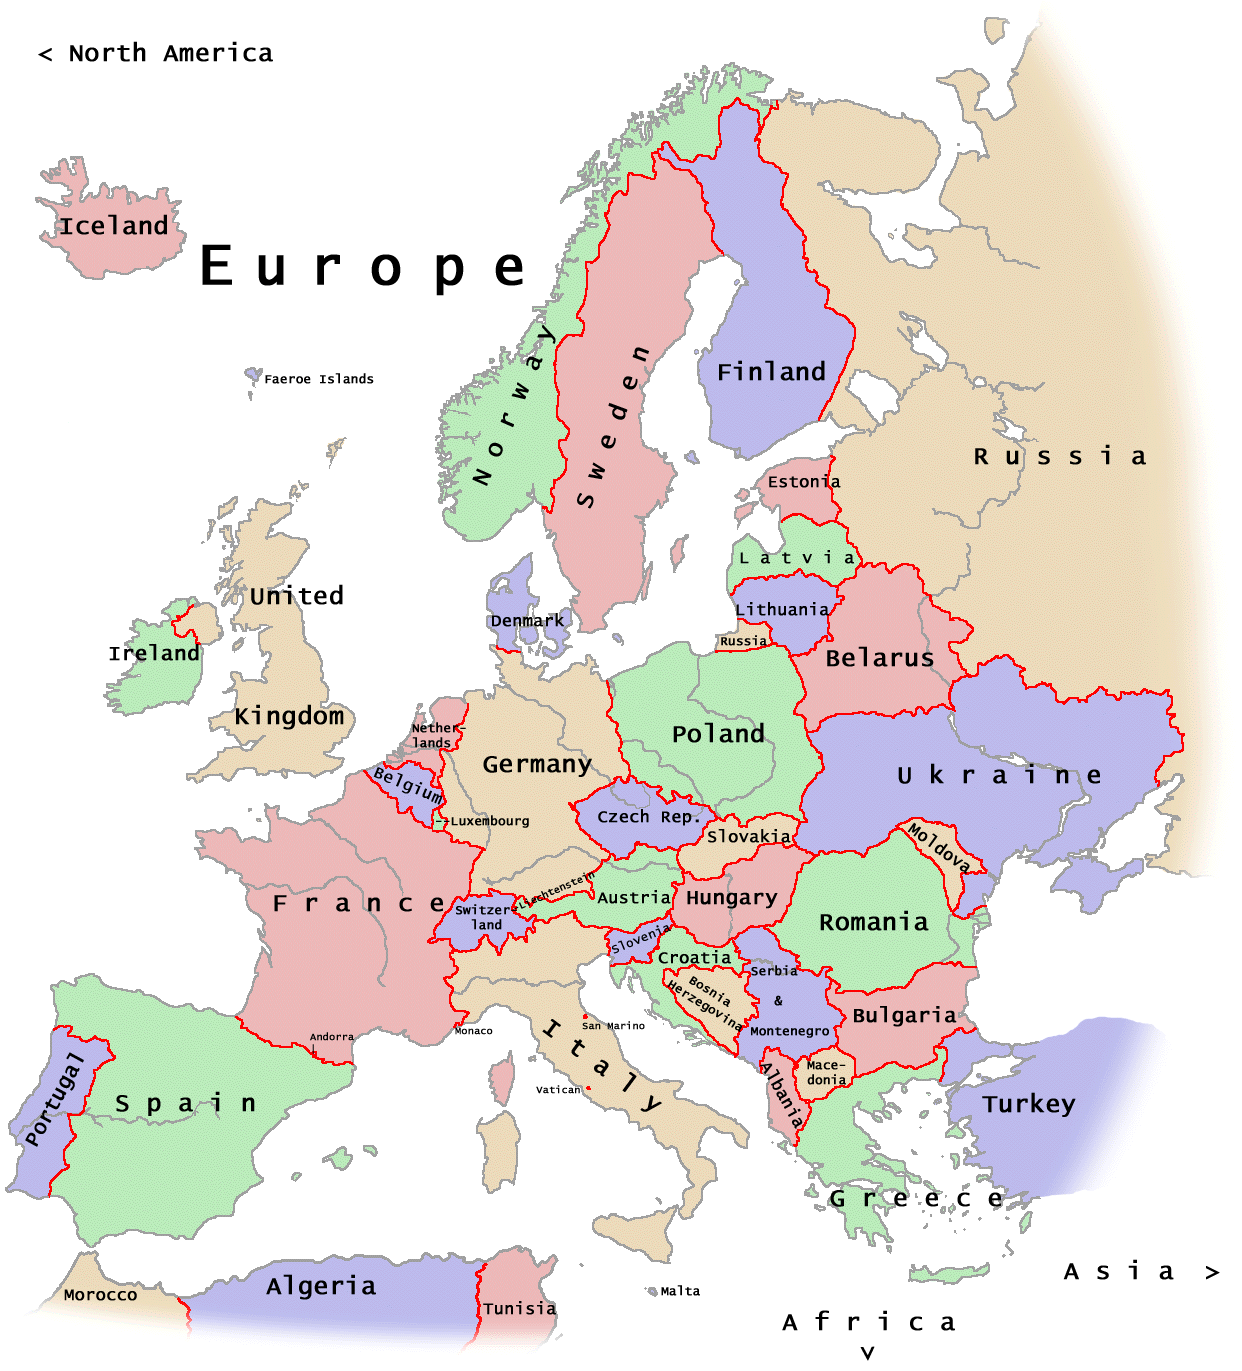 Información e imágenes con mapas de Europa | Imágenes y Noticias